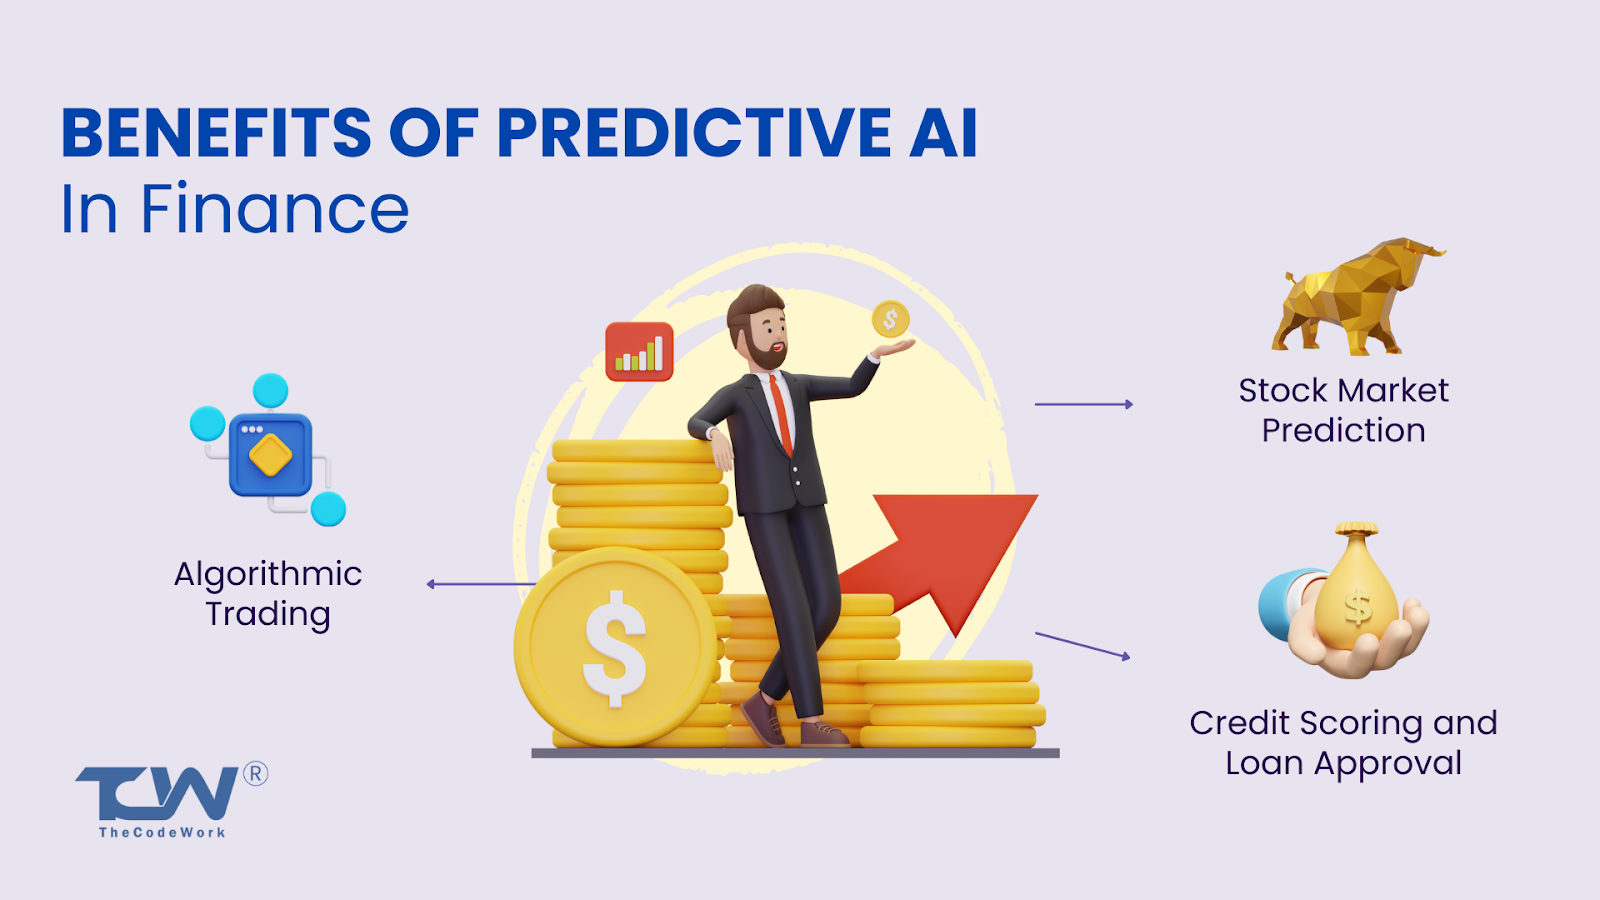 Predictive AI in finance